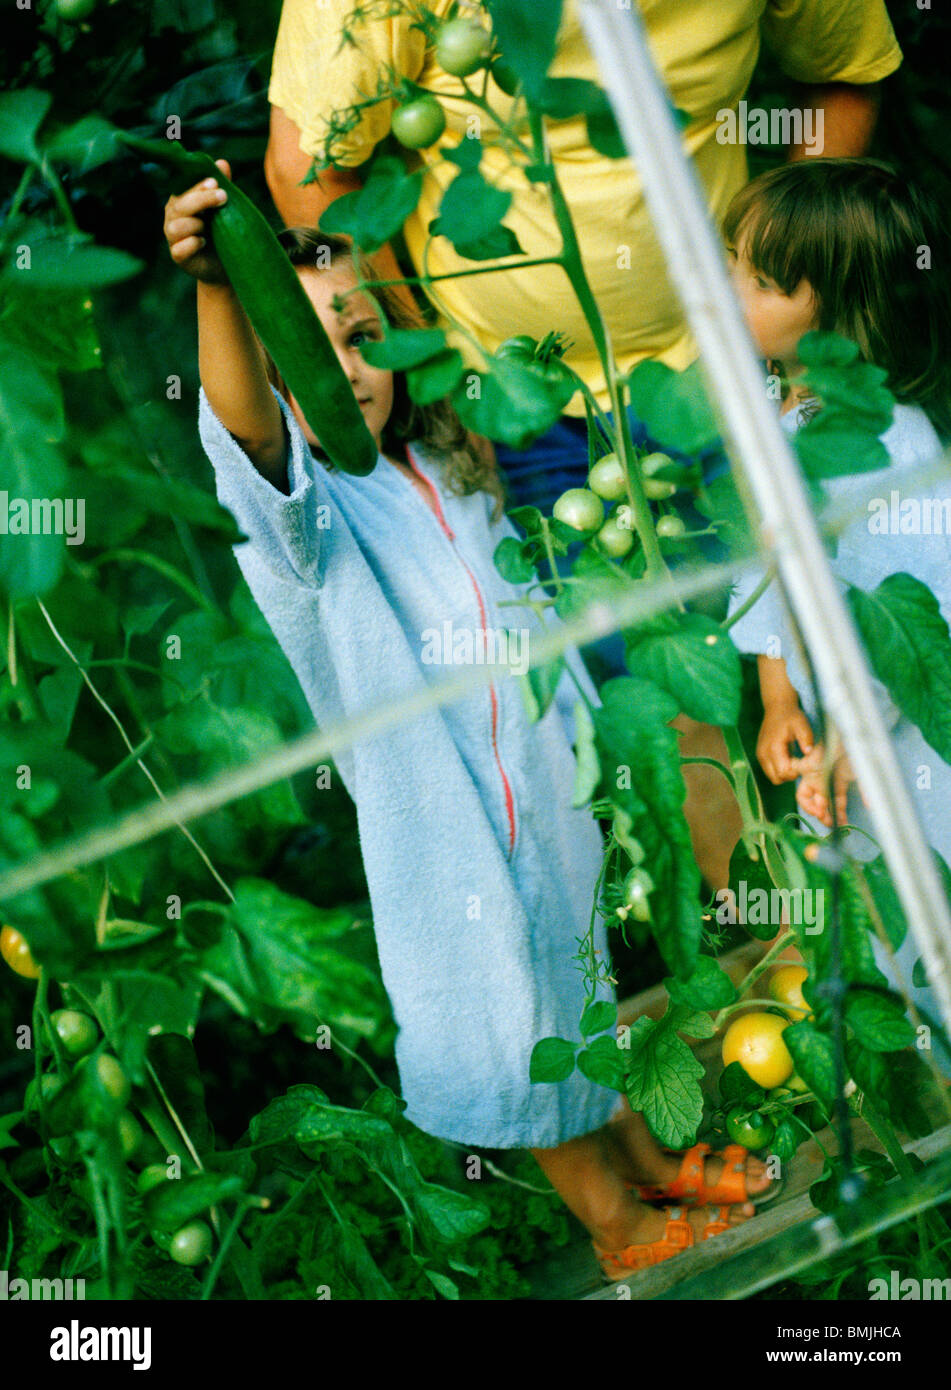 Niños y una persona en un invernadero, Suecia. Foto de stock